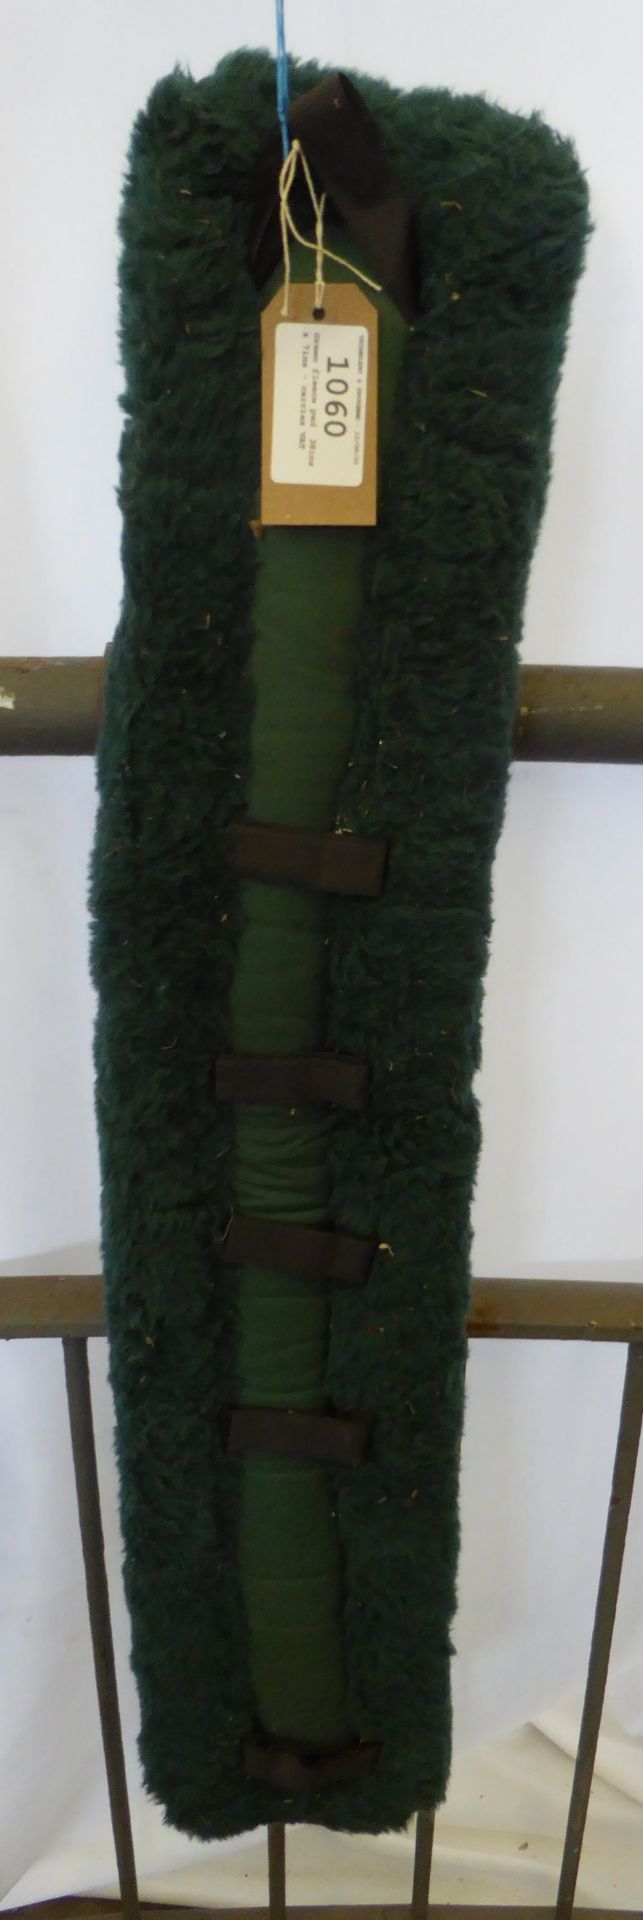 Green fleece pad, 38ins x 7ins - carries VAT